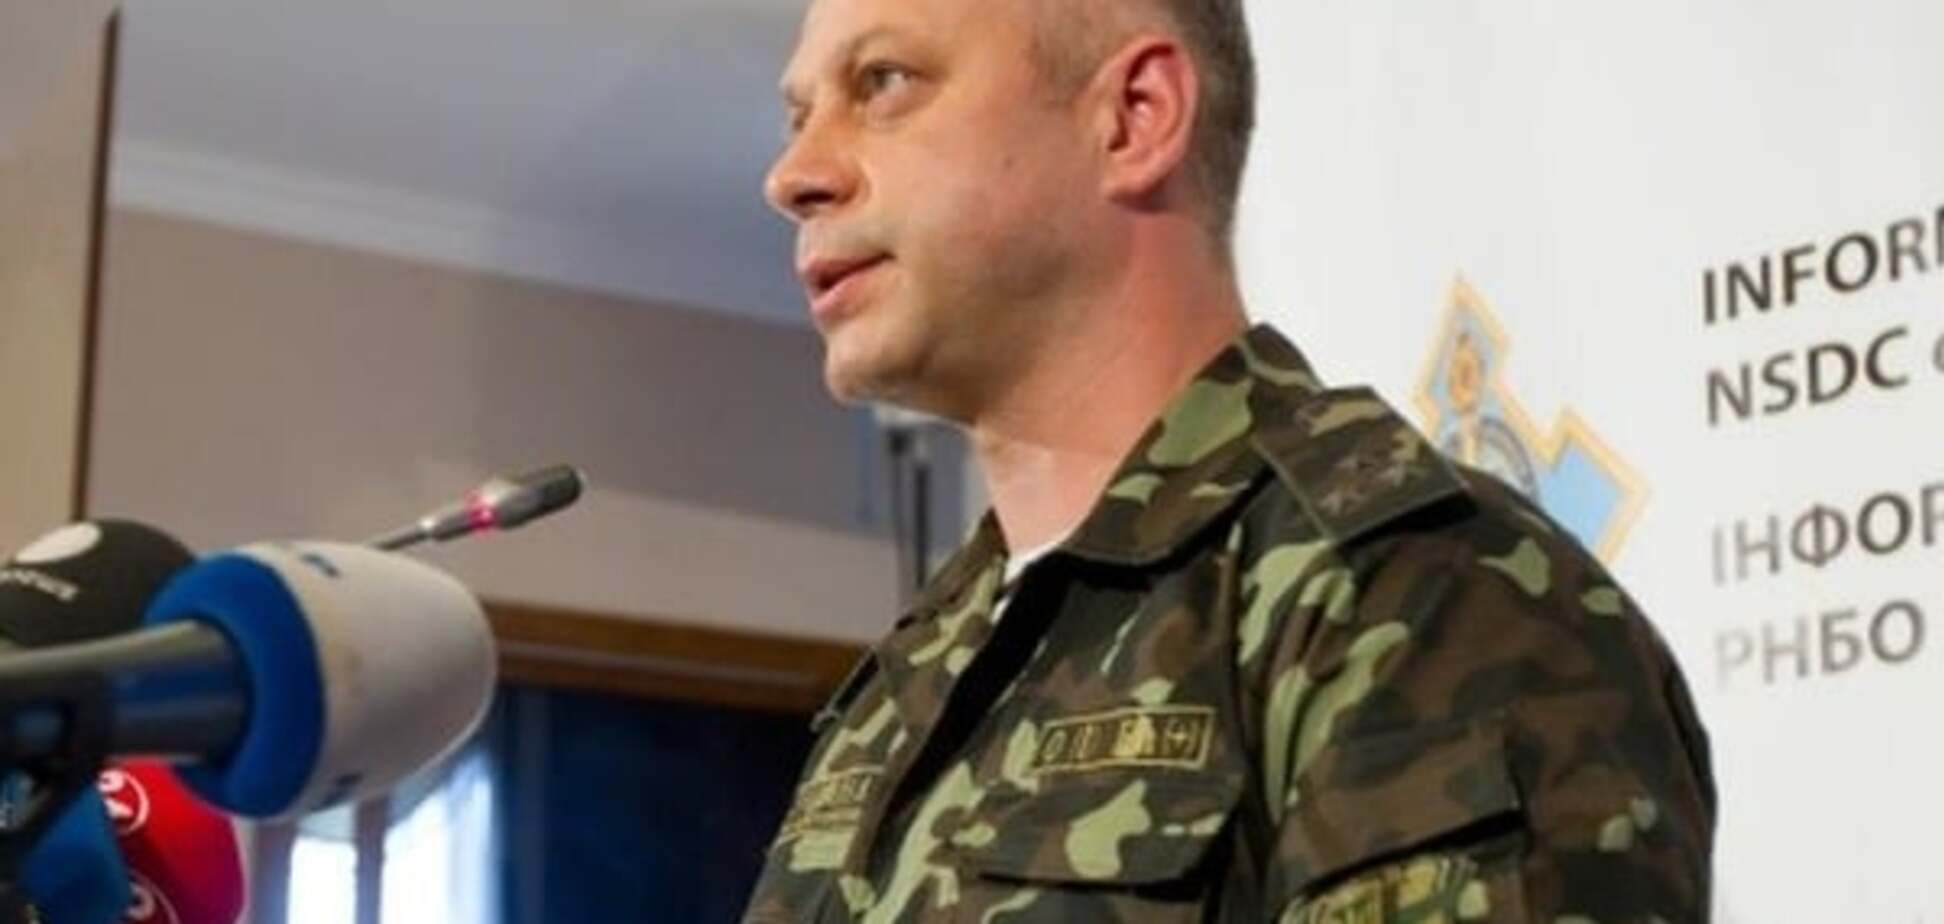 Пособничество терроризму: на Донбассе задержали информаторов 'ДНР' и 'ЛНР'